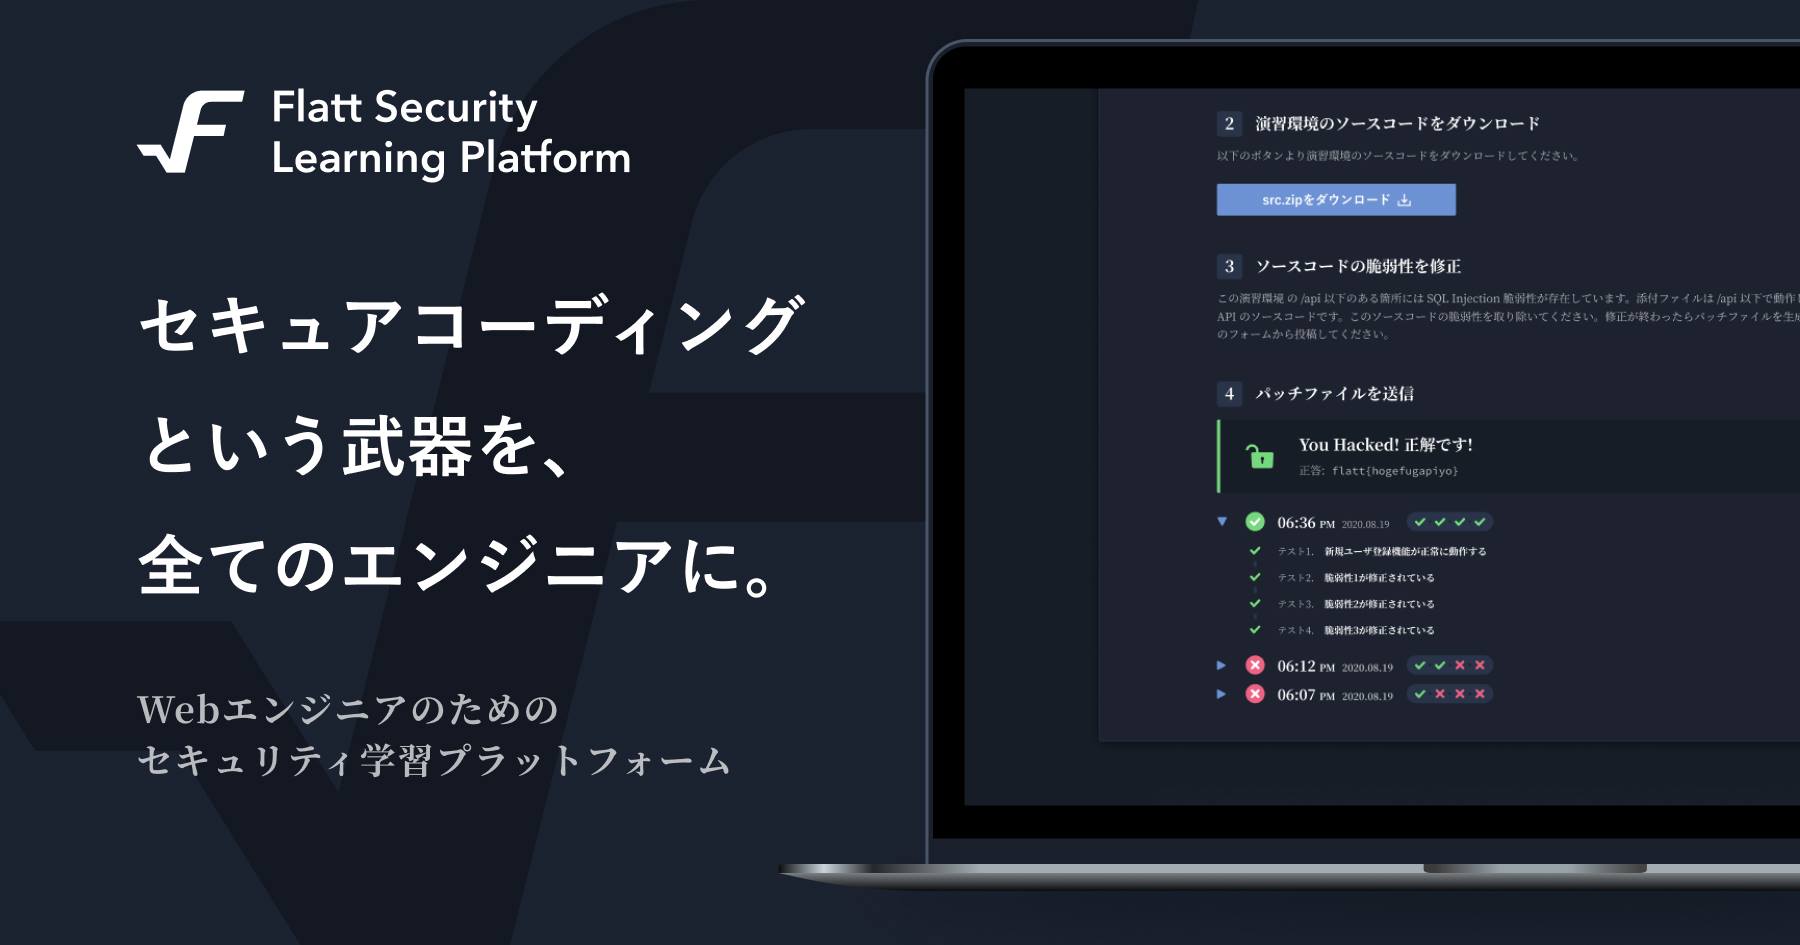 セキュリティ学習プラットフォーム「Flatt Security Learning Platform」 すべての画像提供 : Flatt Security